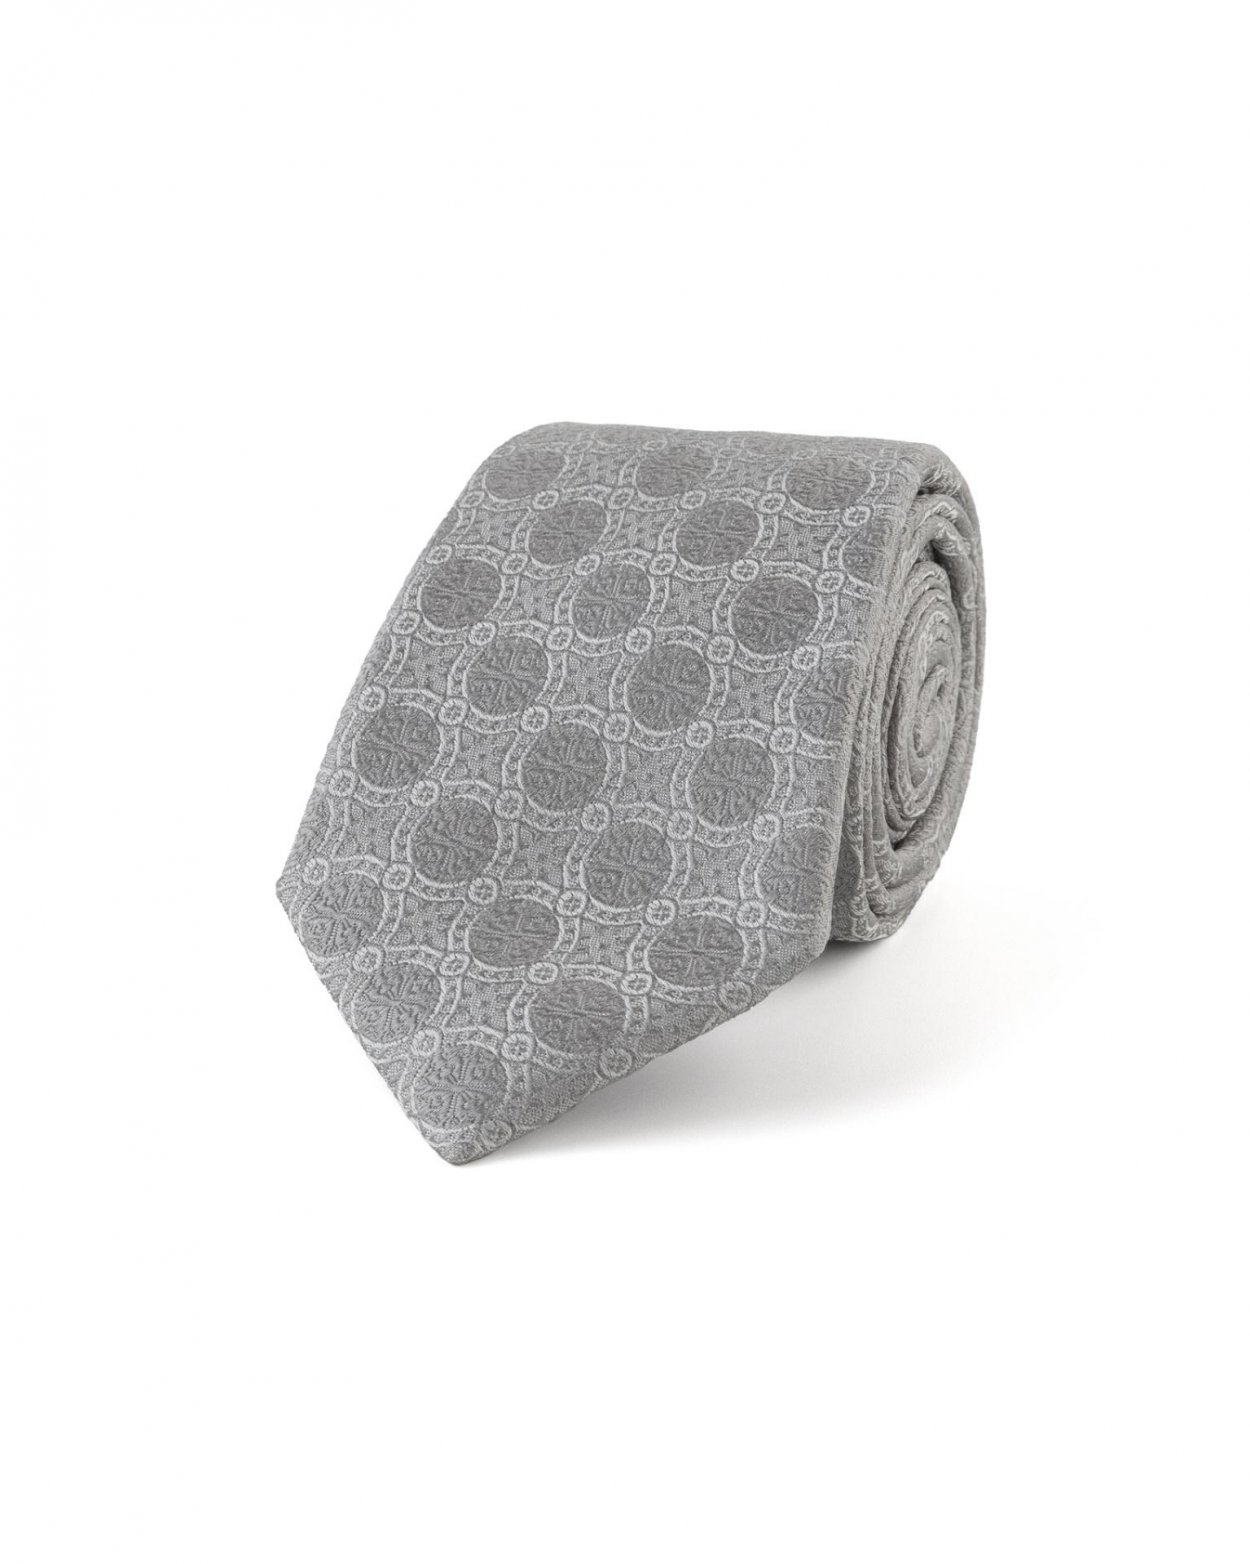 Stříbrná hedvábná kravata s jemným vzorem